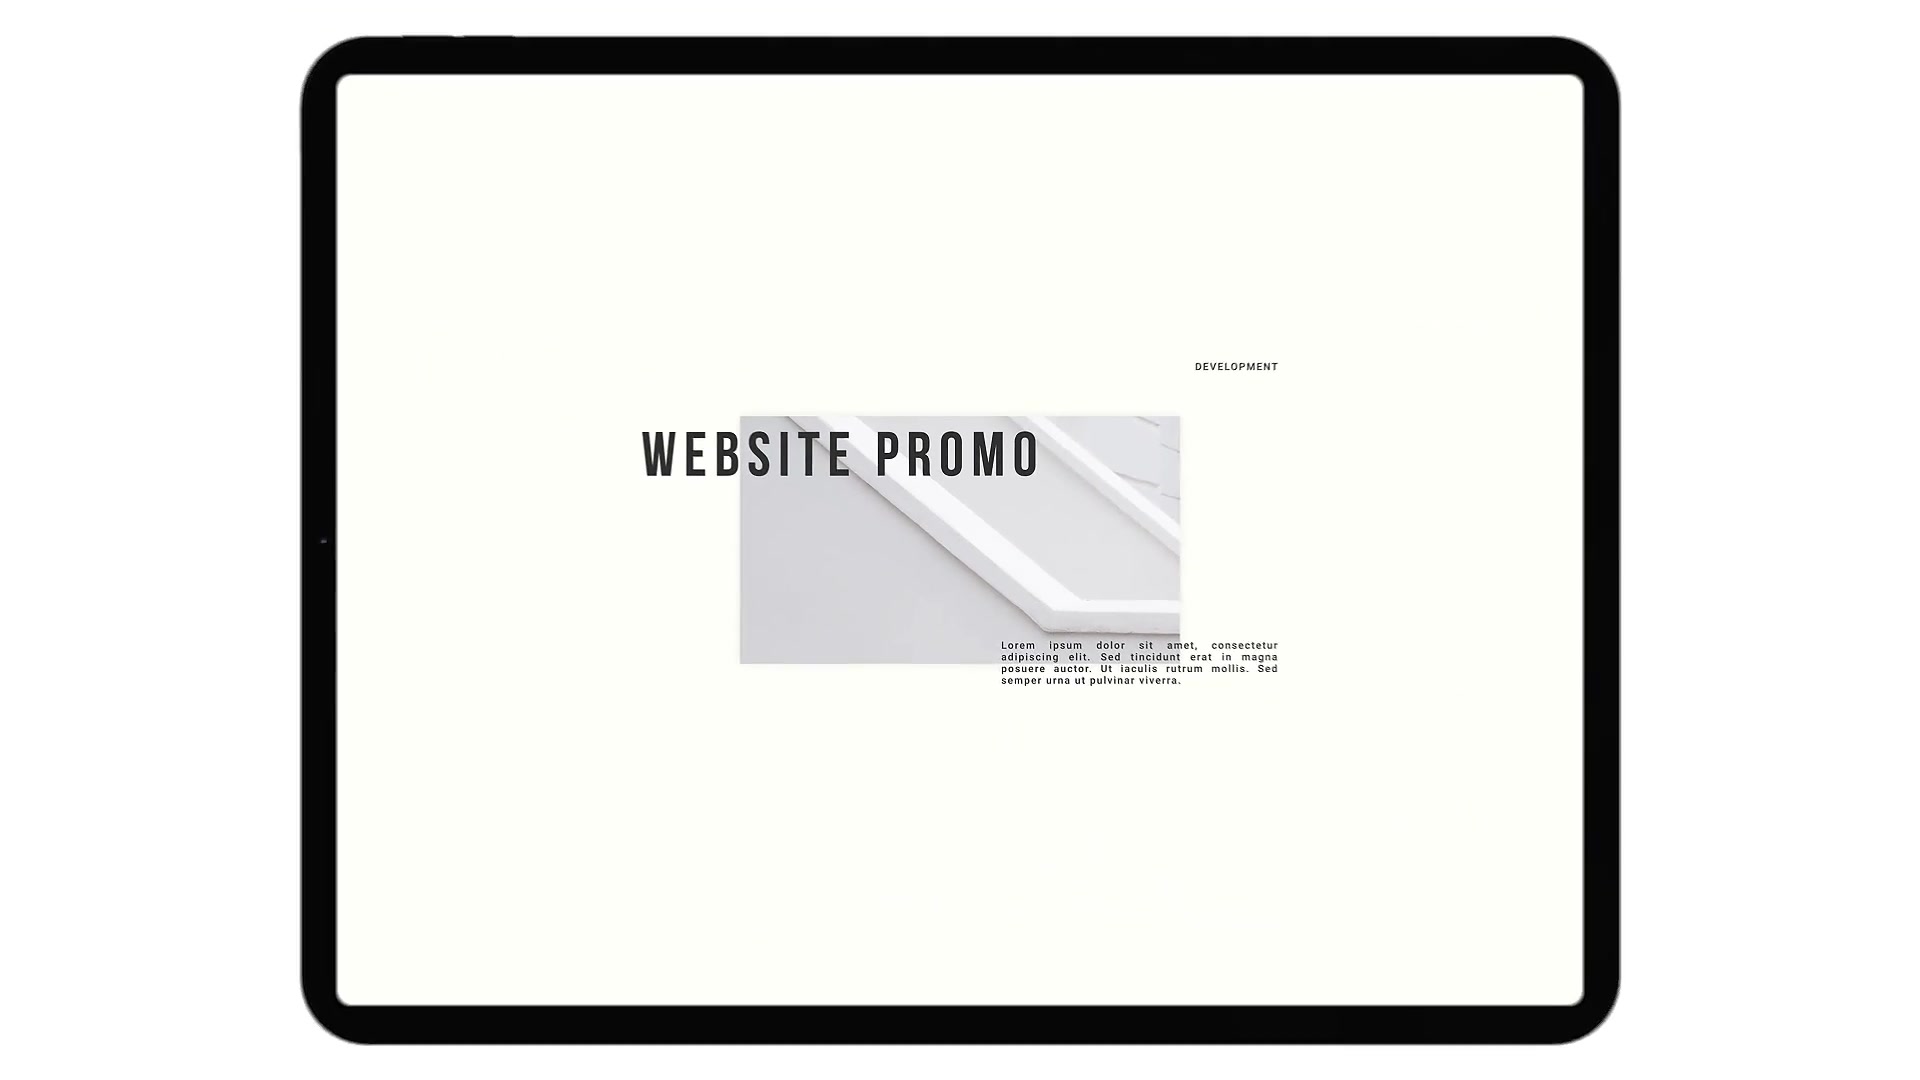 Web Site Light Promo Videohive 38128838 Premiere Pro Image 2